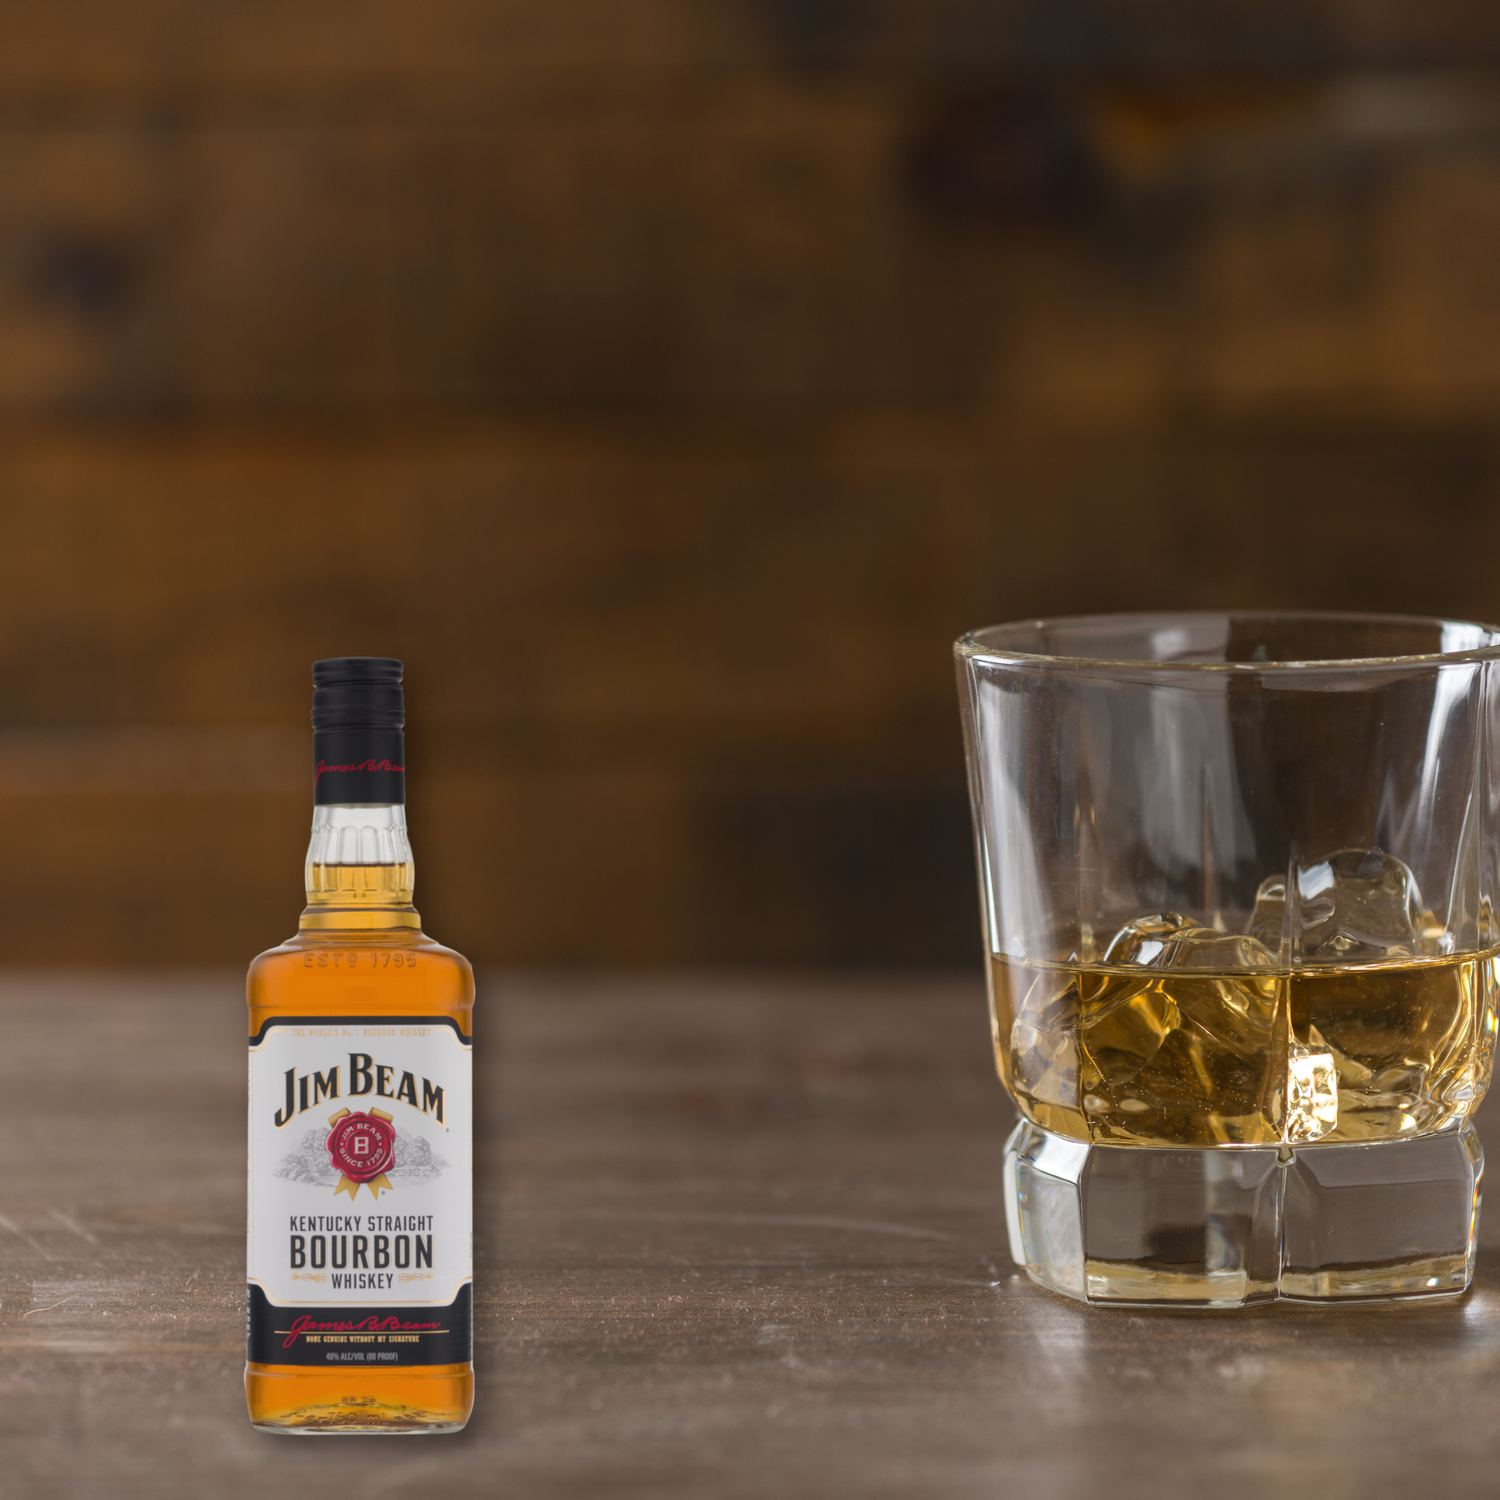 Jim Beam White Bourbon Whiskey, 750mL